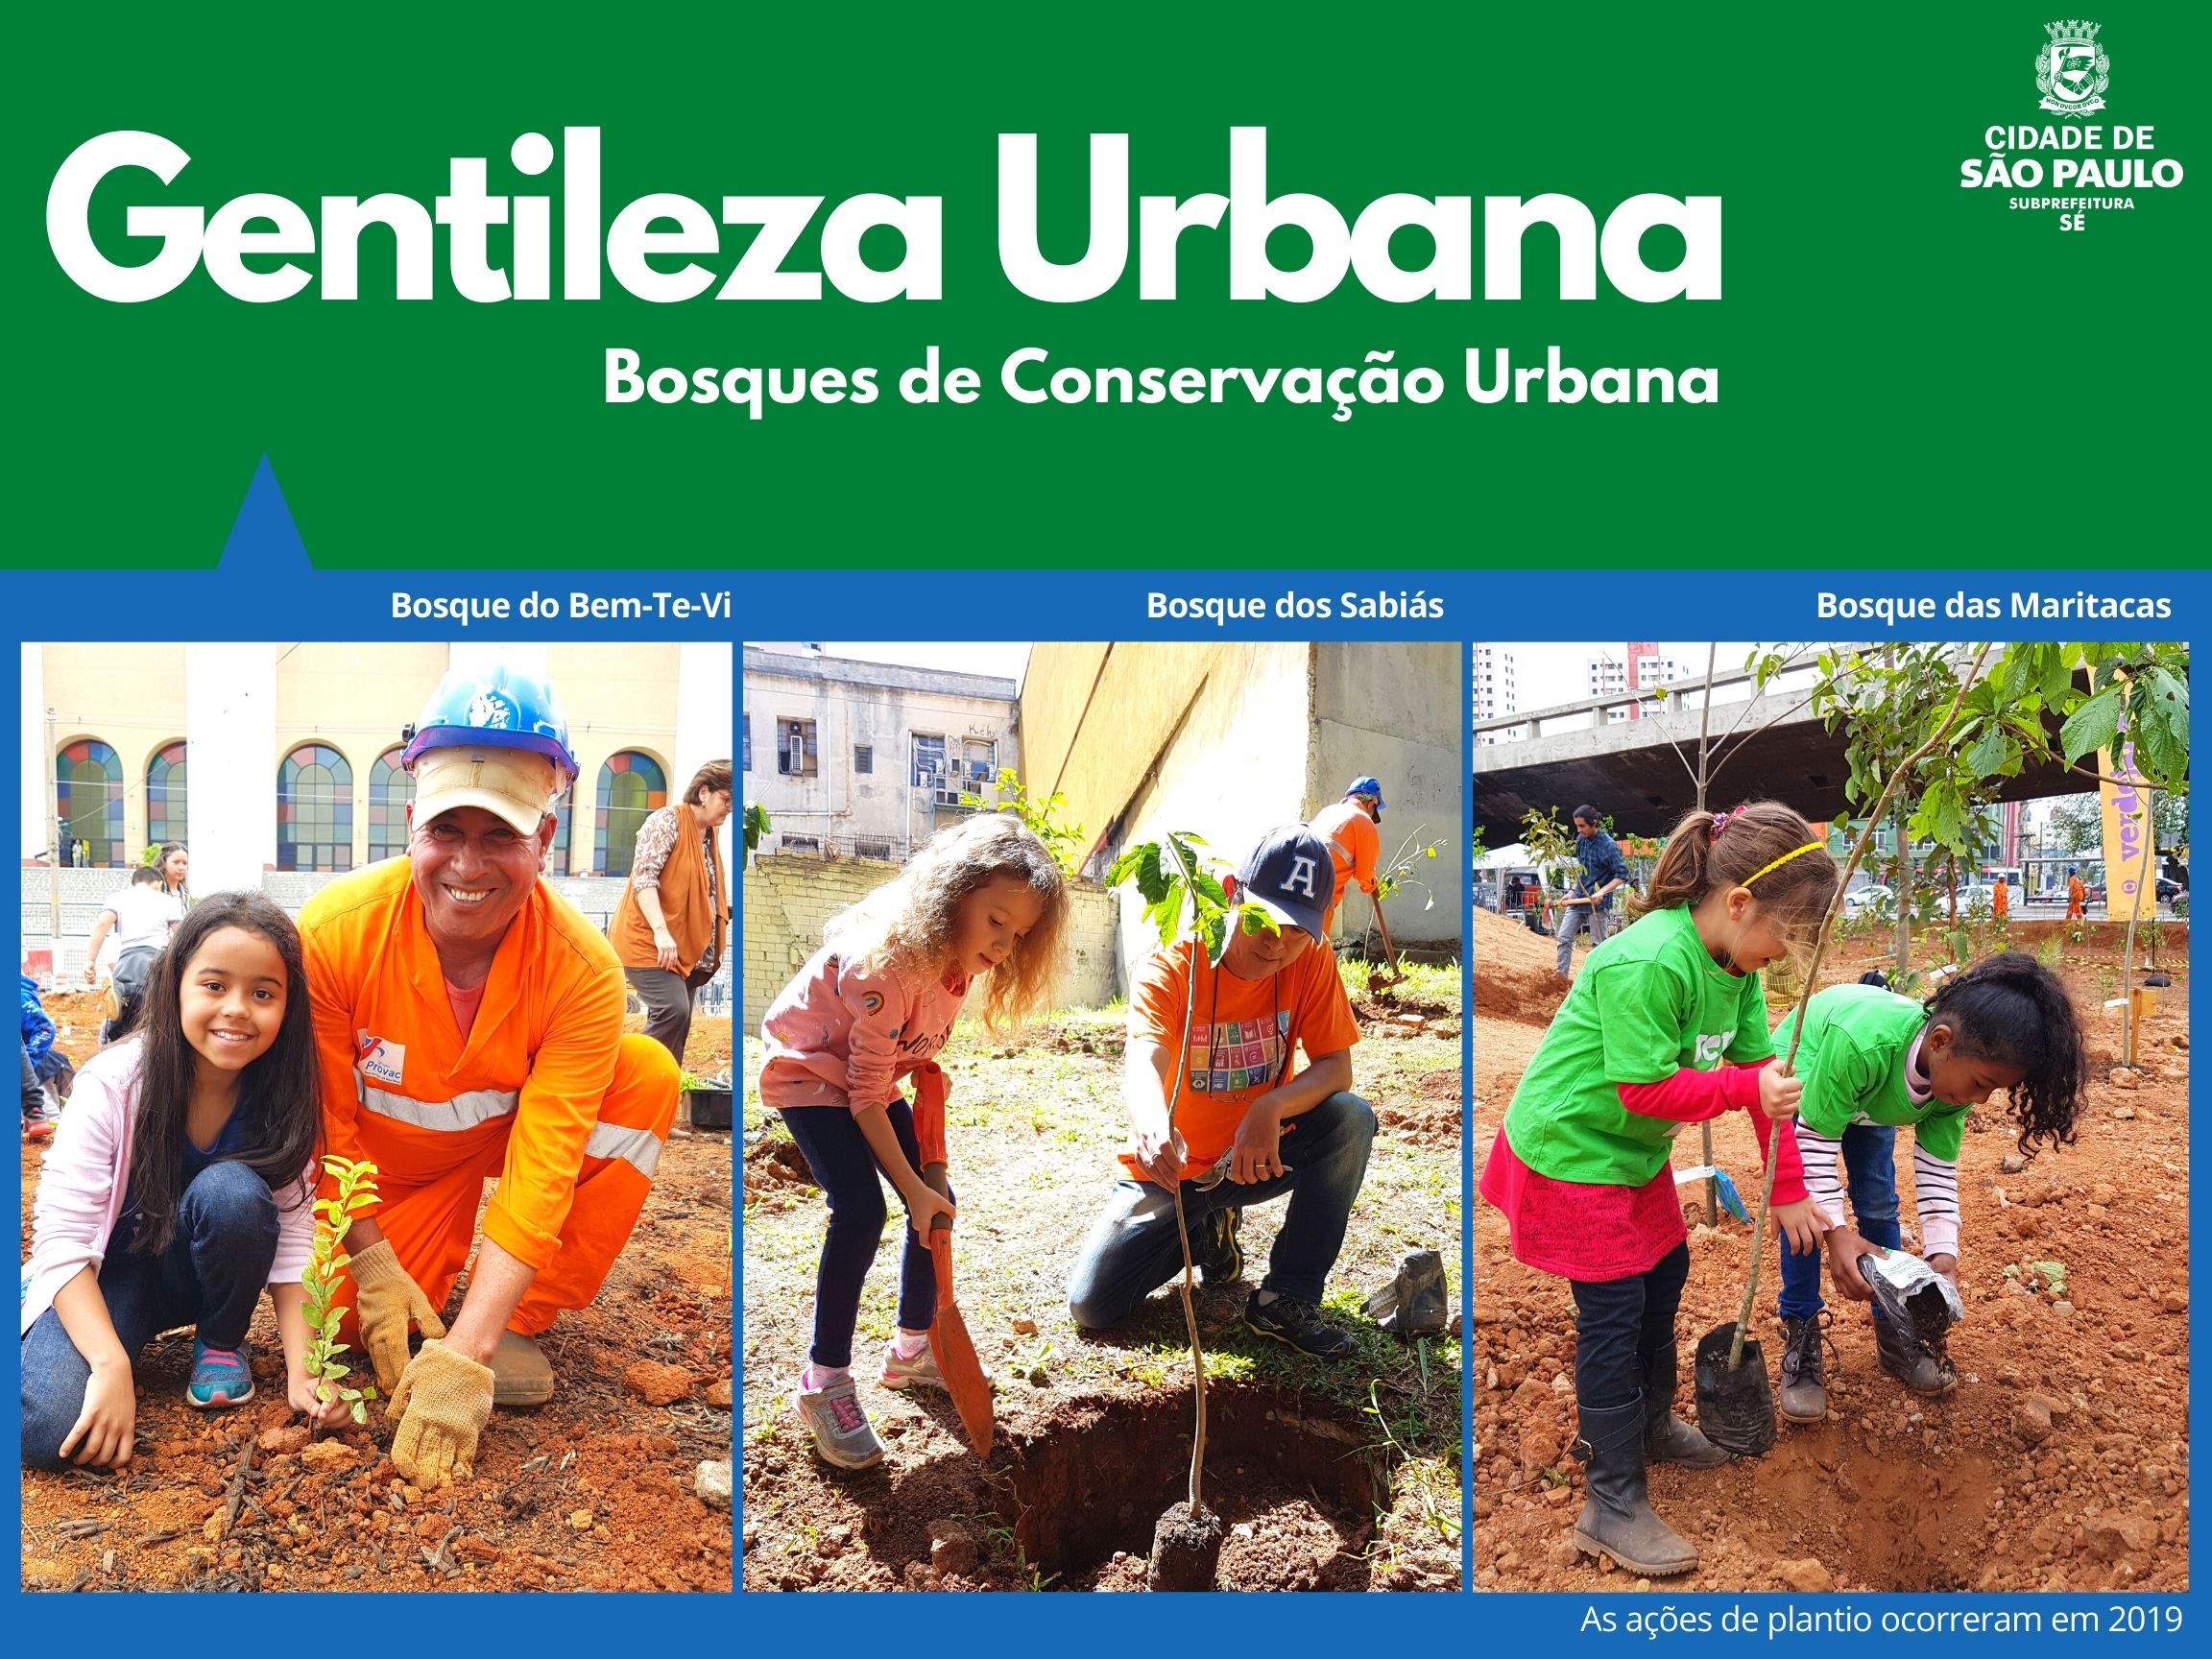 Arte escrito Gentileza Urbana com o logotipo da subprefeitura Sé mostra quatro fotos de funcionários plantando com crianças nos bosques